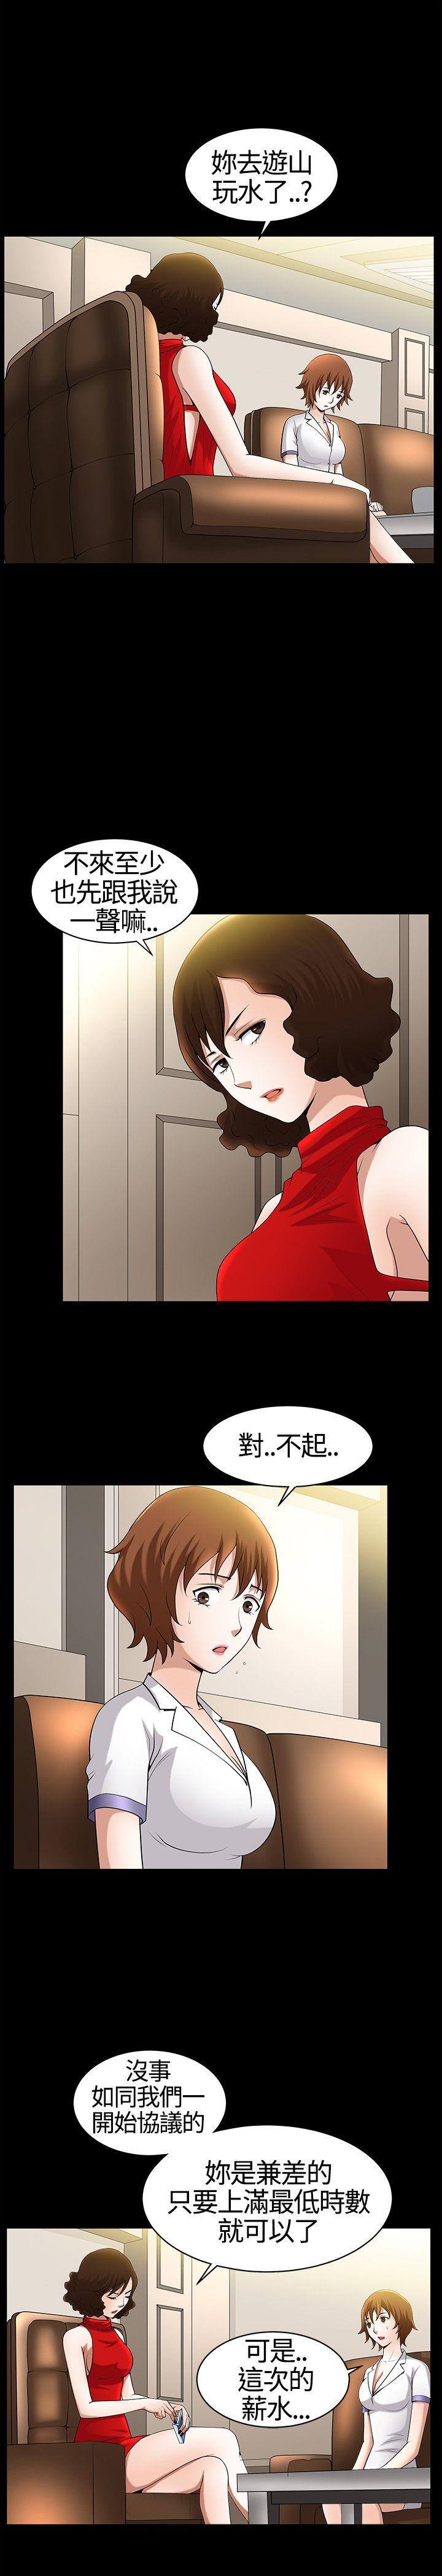 韩国污漫画 人妻性解放3:粗糙的手 第17话 1